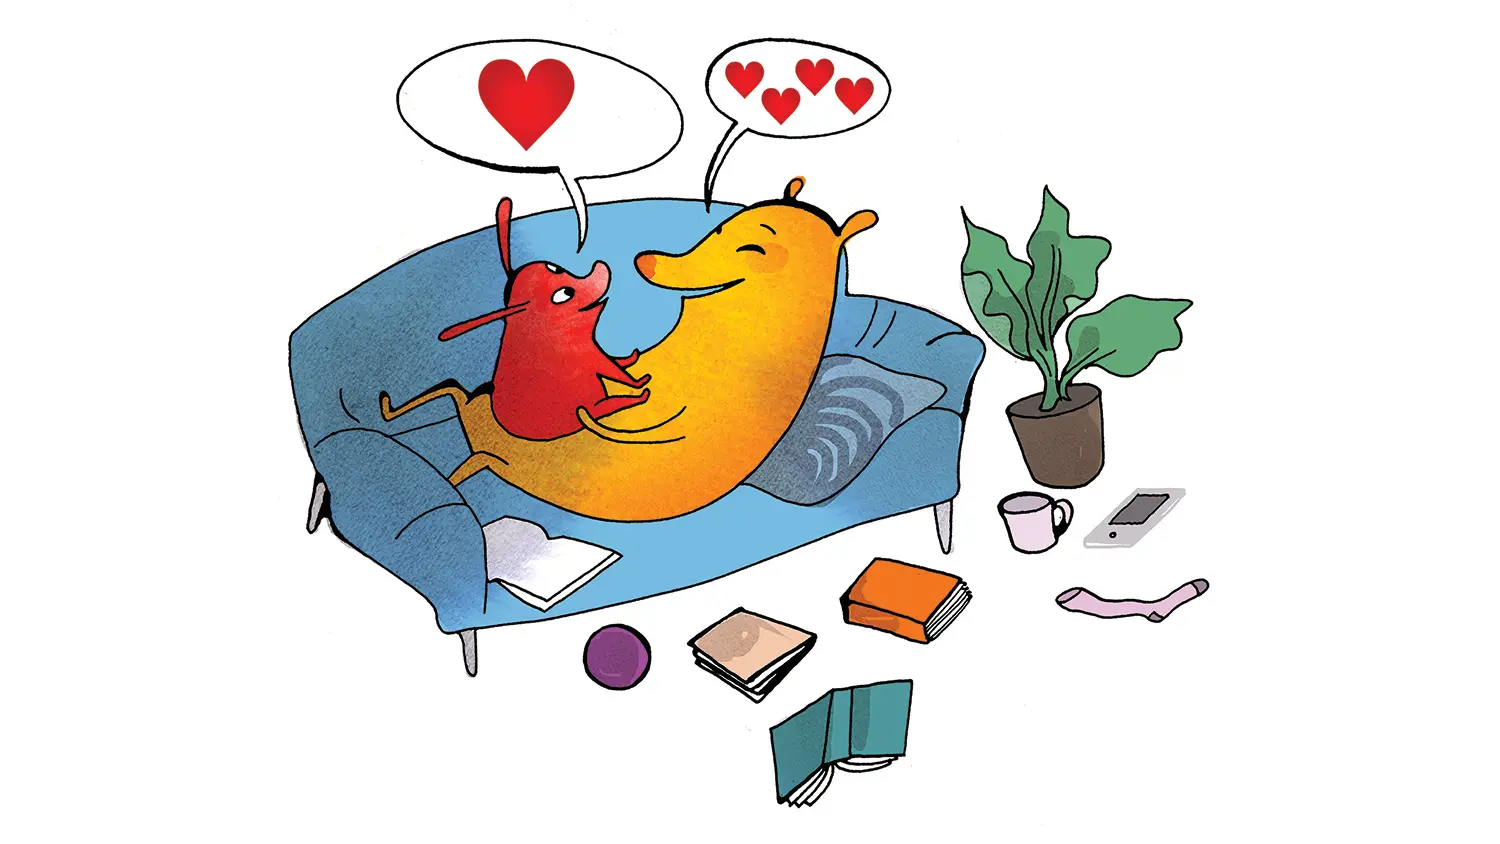 Illustration där en stor figur ligger i en soffa och har en liten figur som sitter i famnen. Från båda kommer pratbubblor med hjärtan. På golvet ligger böcker, en läsplatta, och andra föremål.